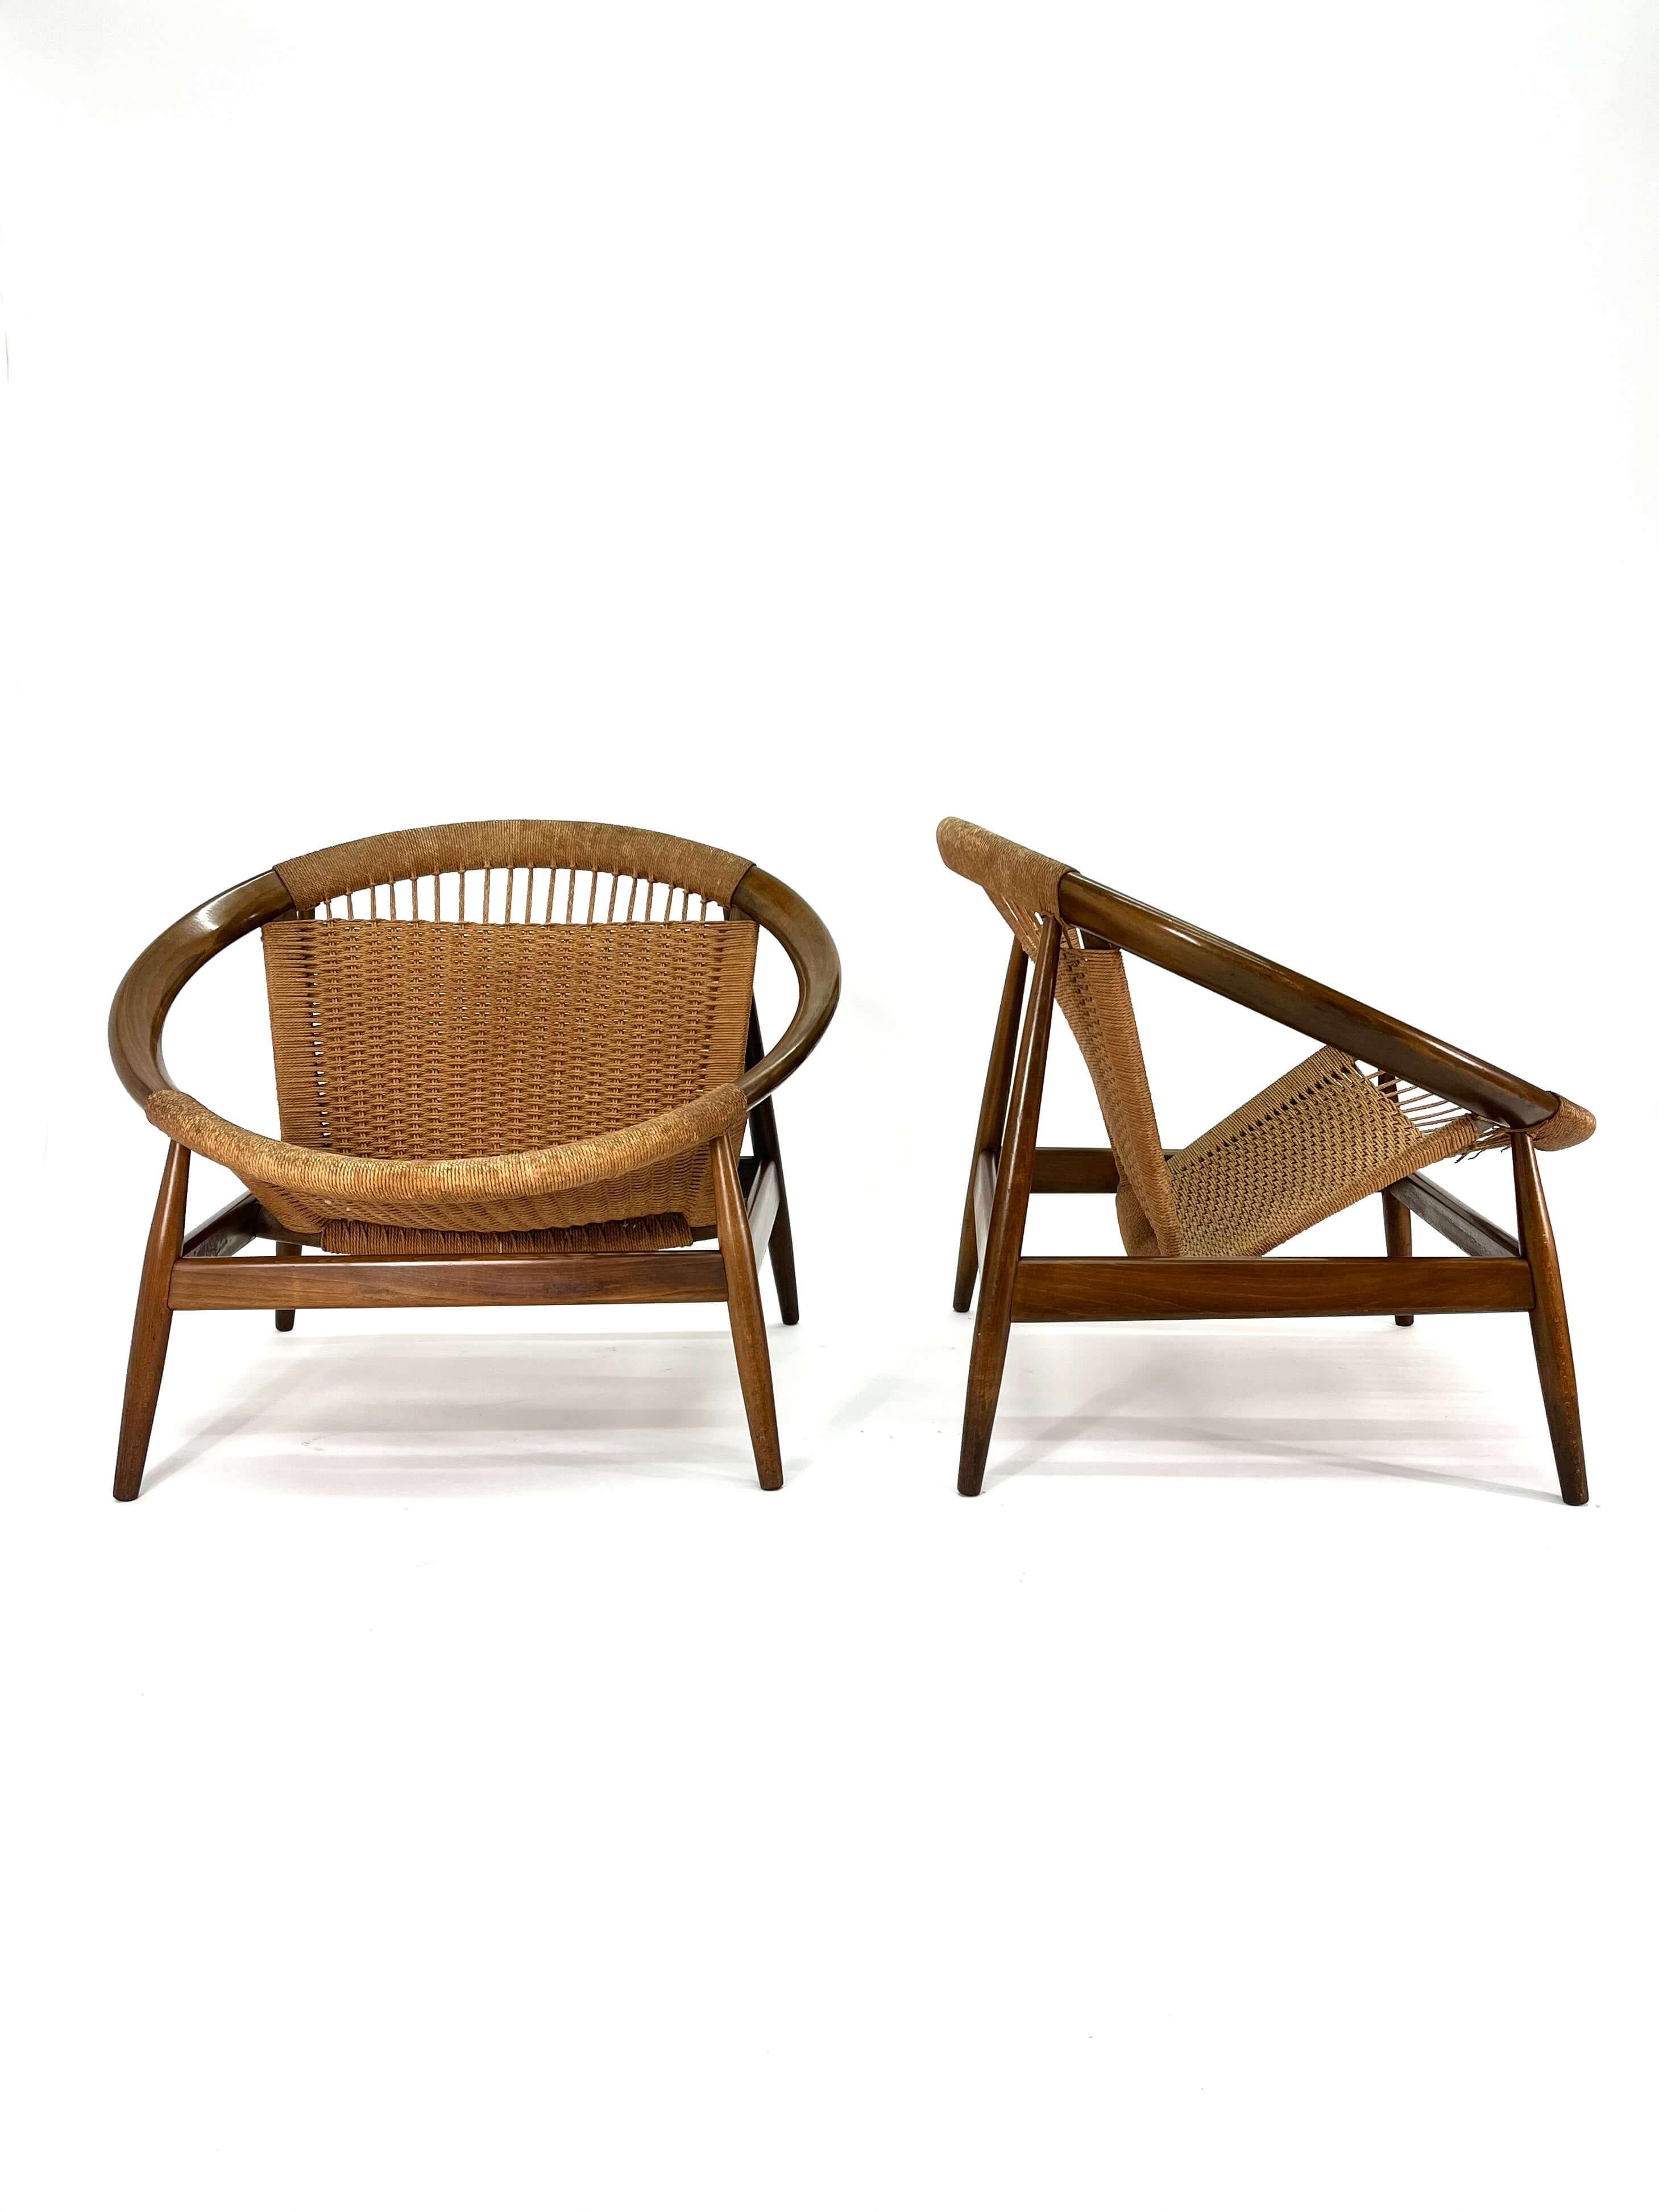 Danish Mid-Century Modern Ringstol Lounge Chair by Illum Wikkelsø For Sale